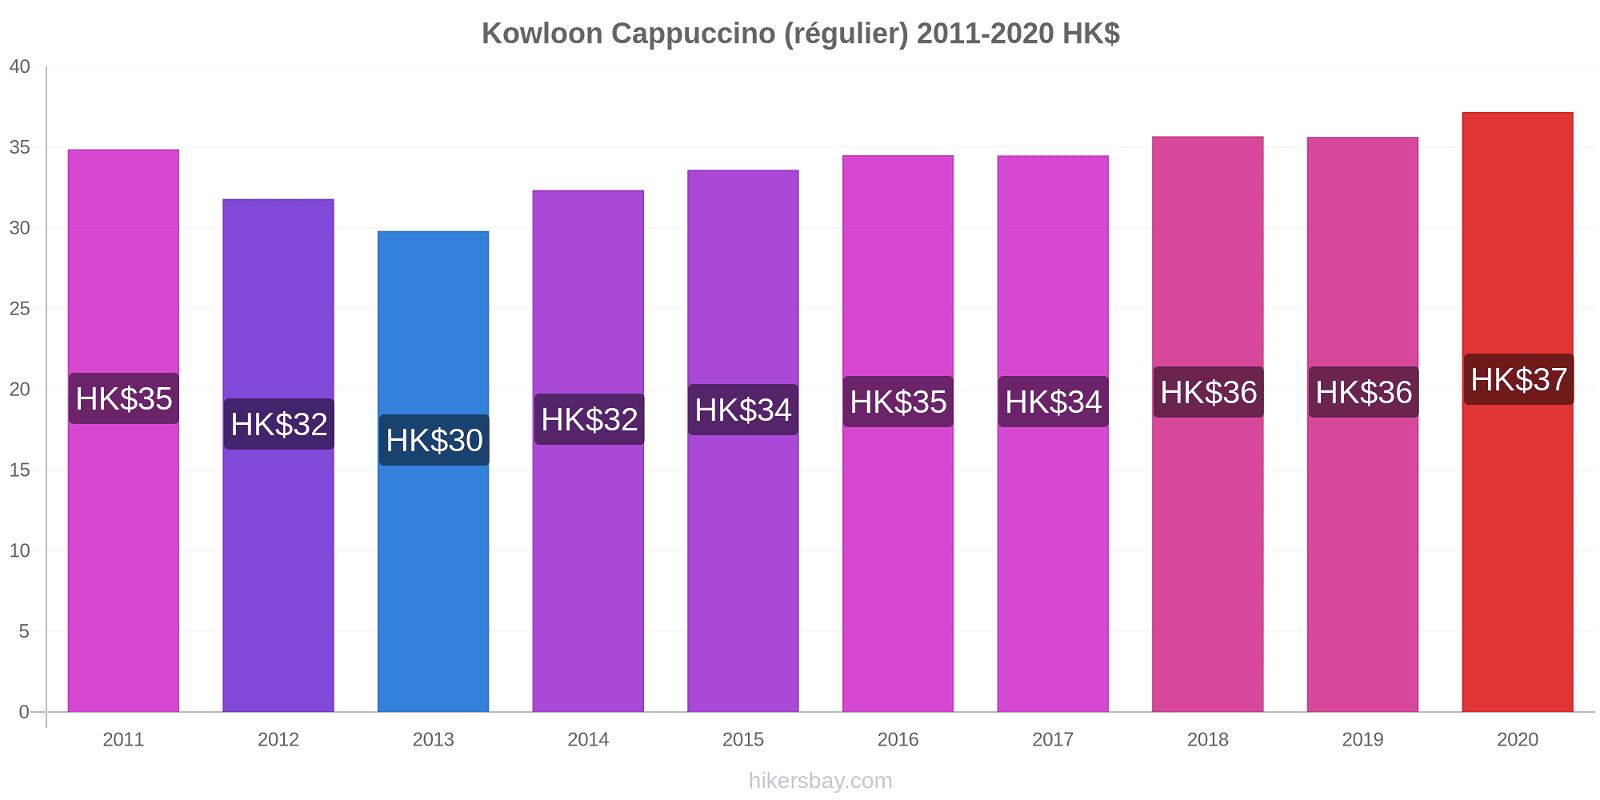 Kowloon changements de prix Cappuccino (régulier) hikersbay.com